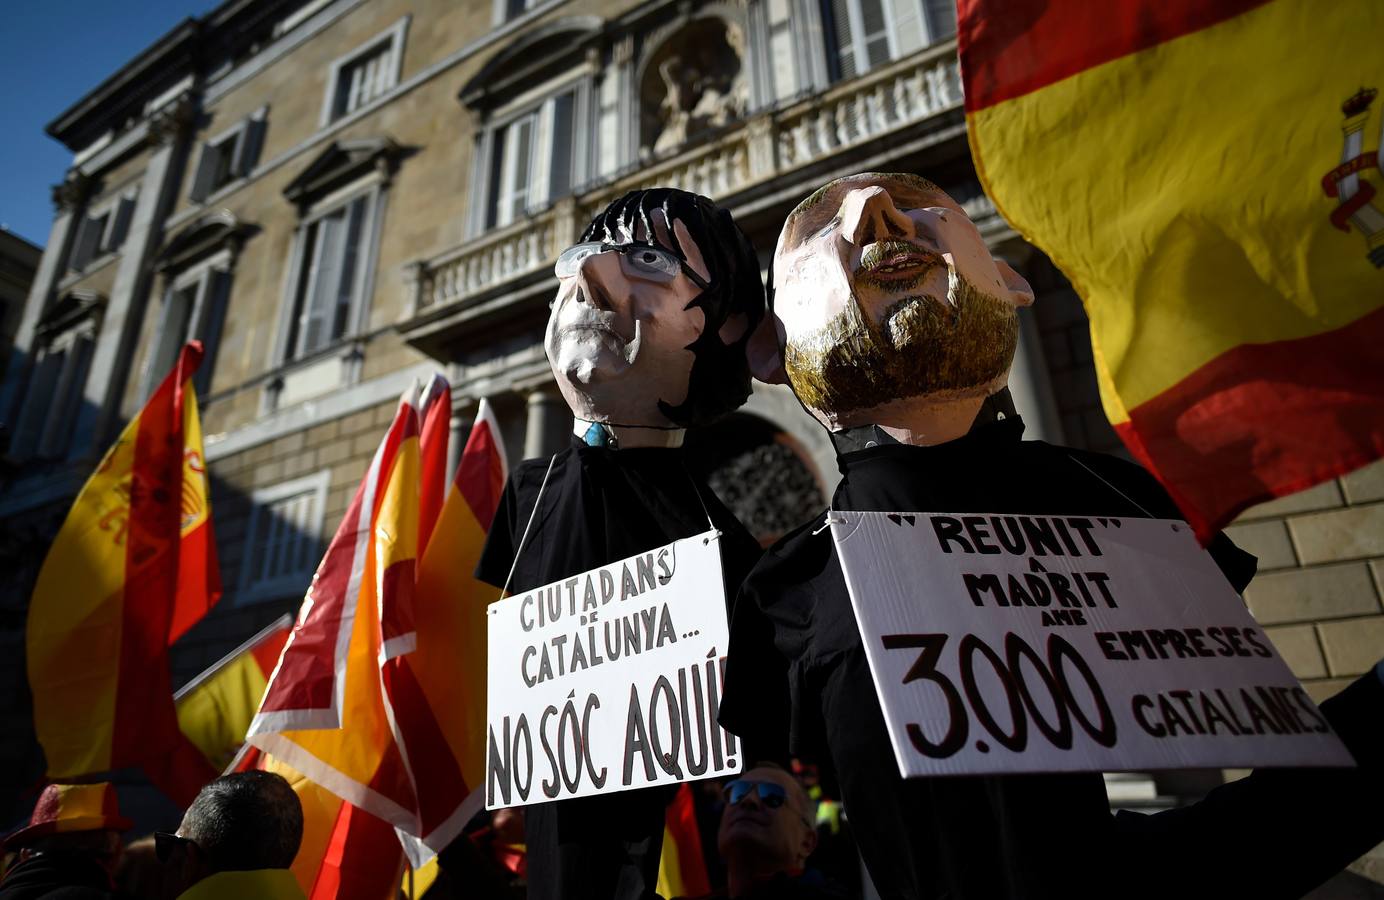 Unas 12.000 personas, según la Guardia Urbana, se han manifestado en el centro de Barcelona convocadas por la entidad Espanya i Catalans, para defender la unidad de España y en defensa de la Constitución, entre gritos de "Puigdemont, a prisión".